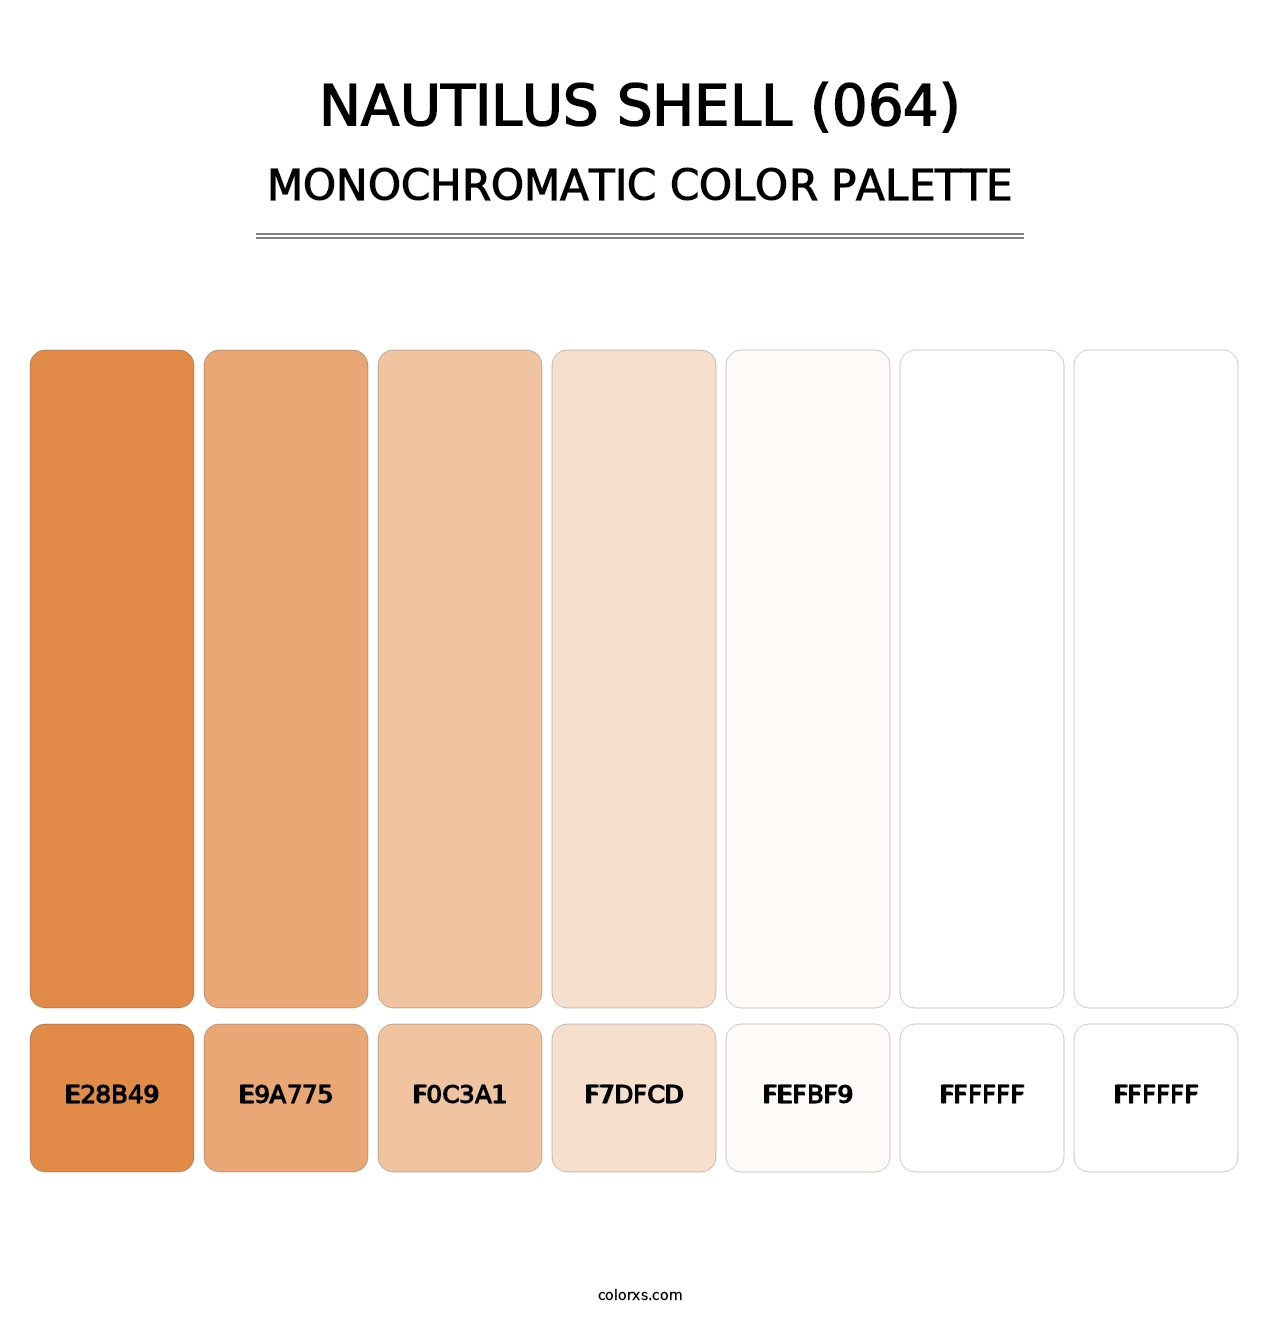 Nautilus Shell (064) - Monochromatic Color Palette